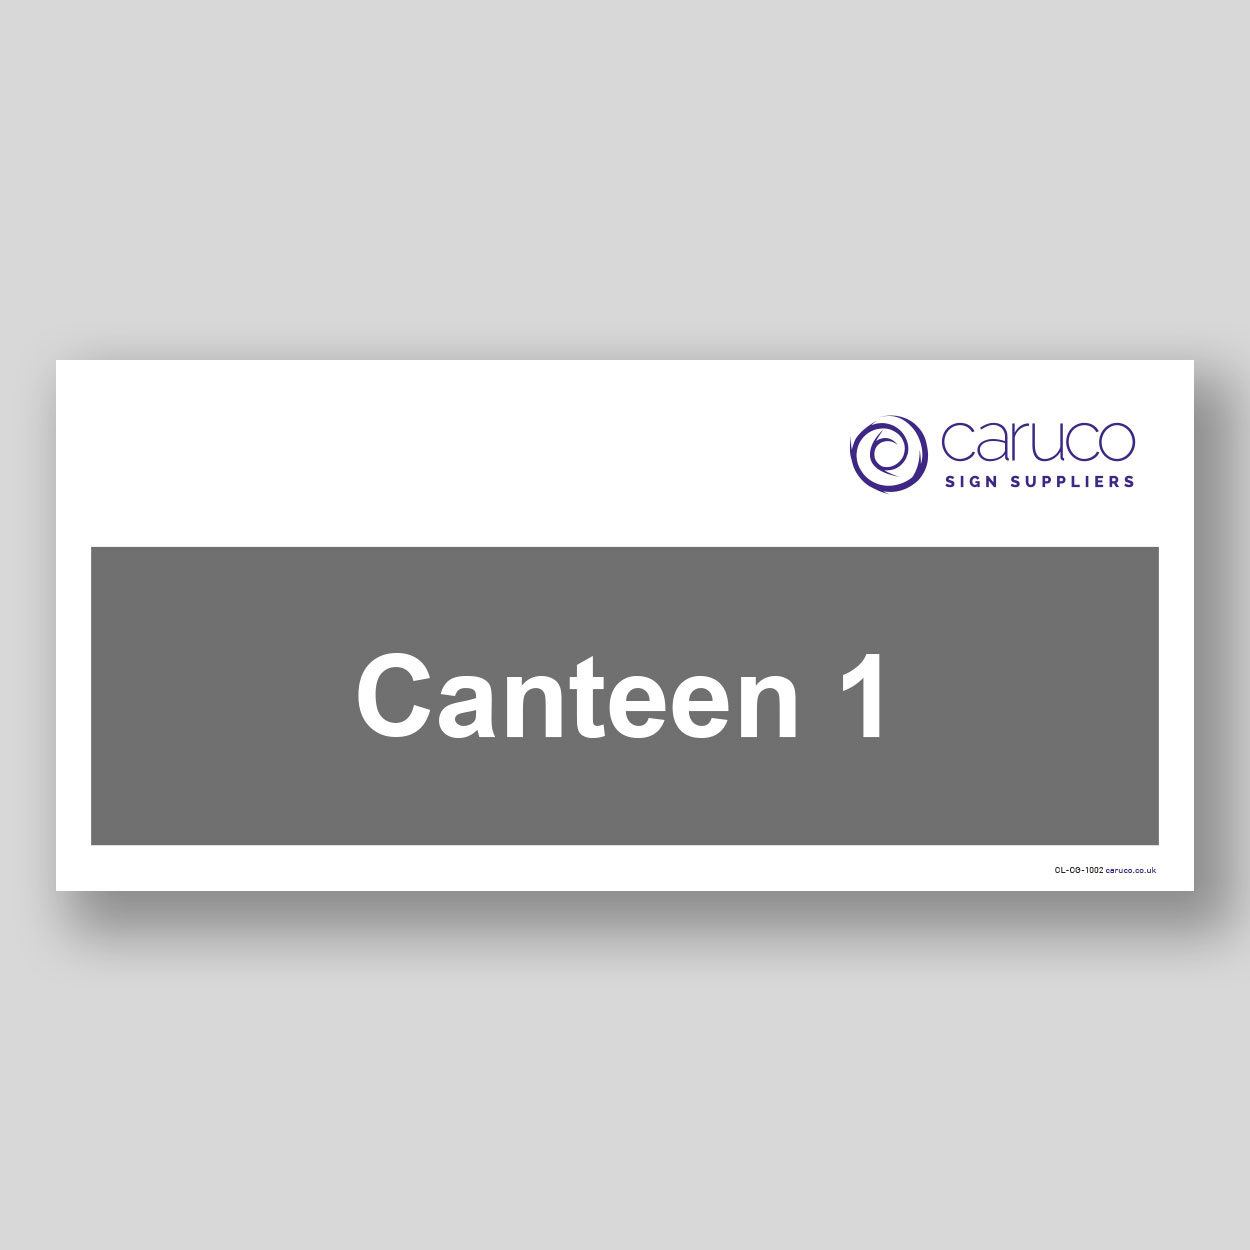 CL-CG-1002 Canteen 1